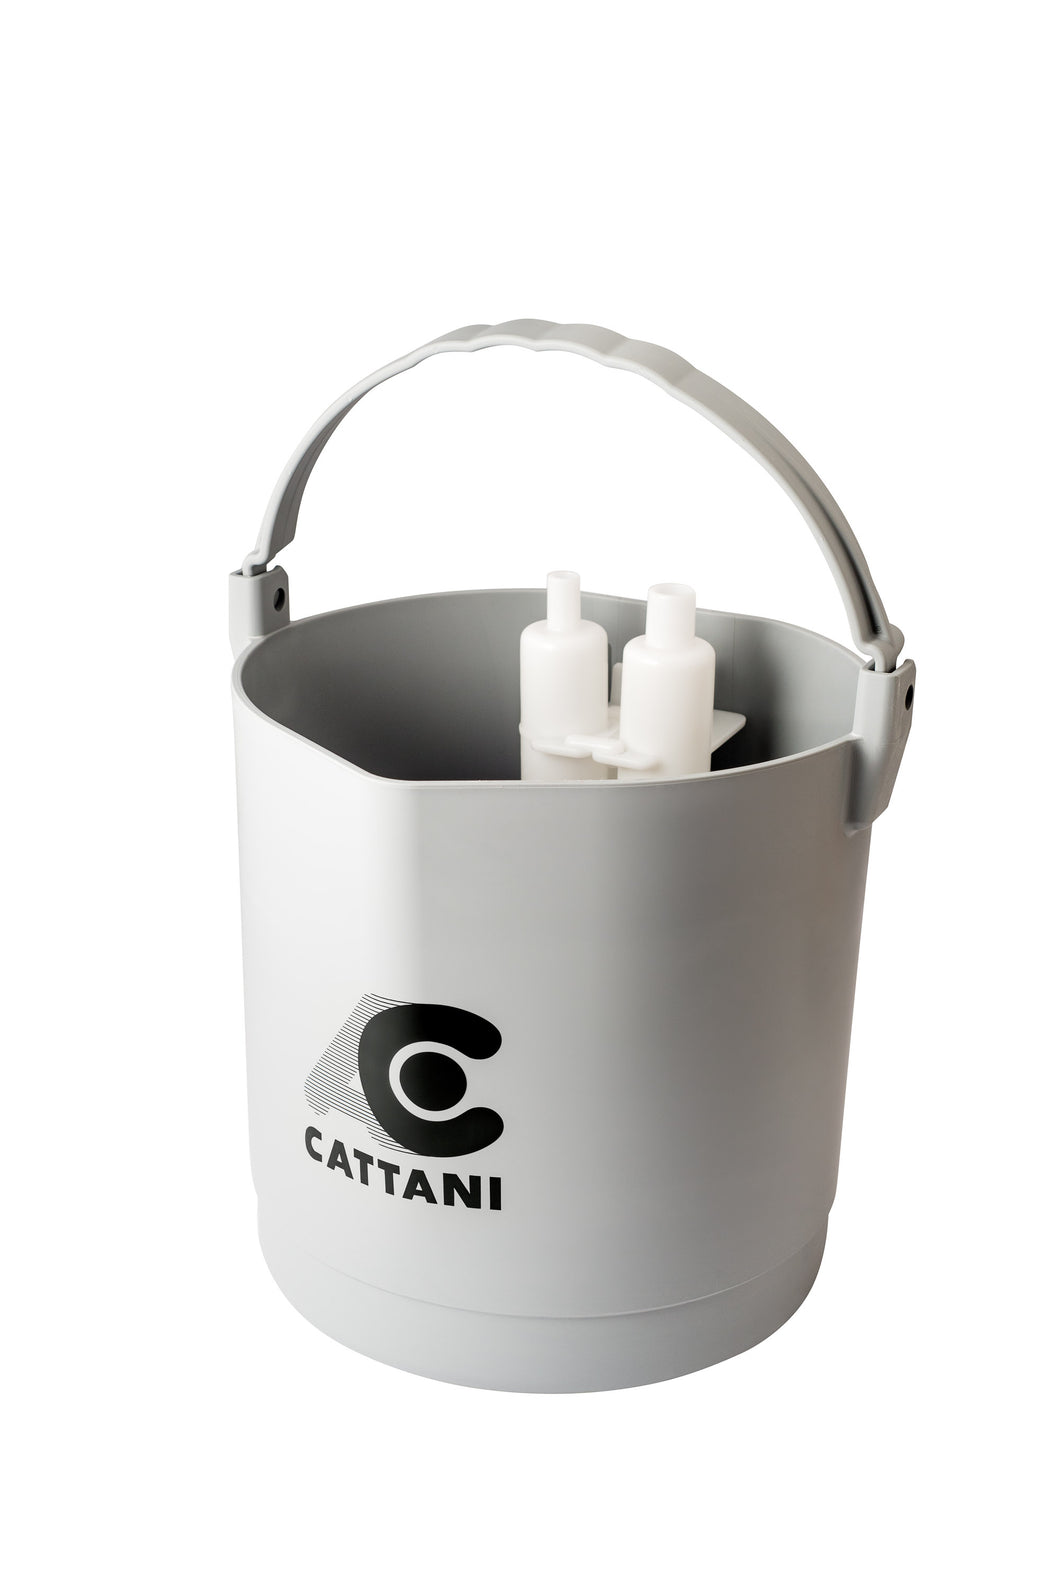 Cattani Suction - Starter Kit